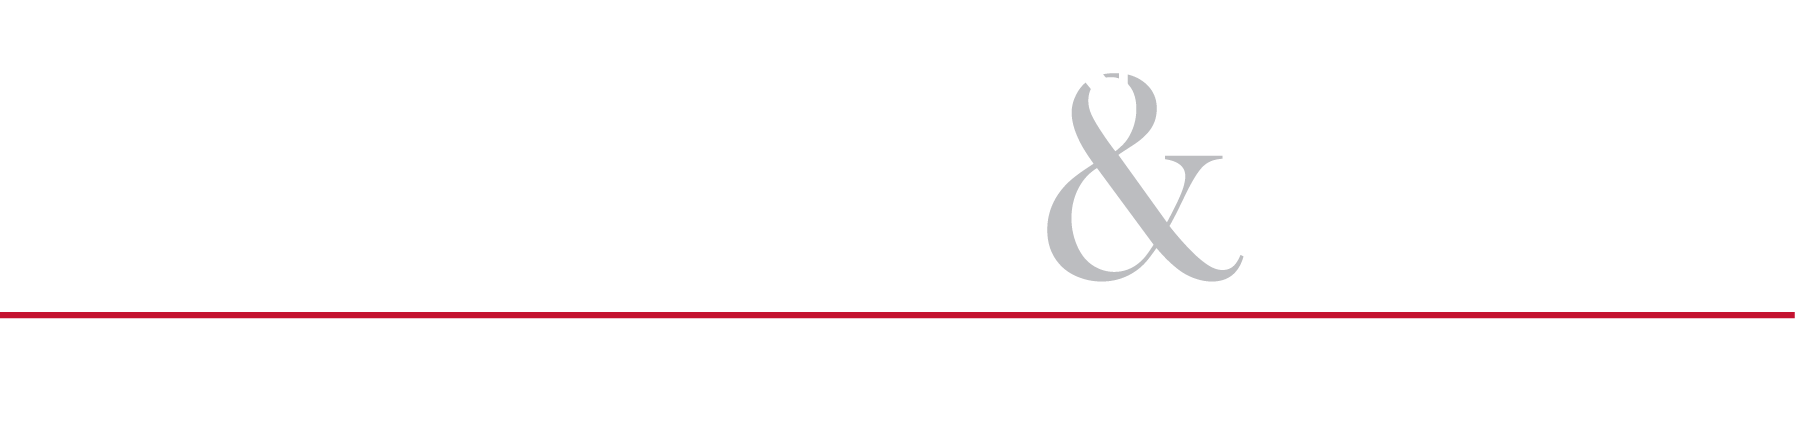 Micrositio de Allen and Allen Tractor Trailer